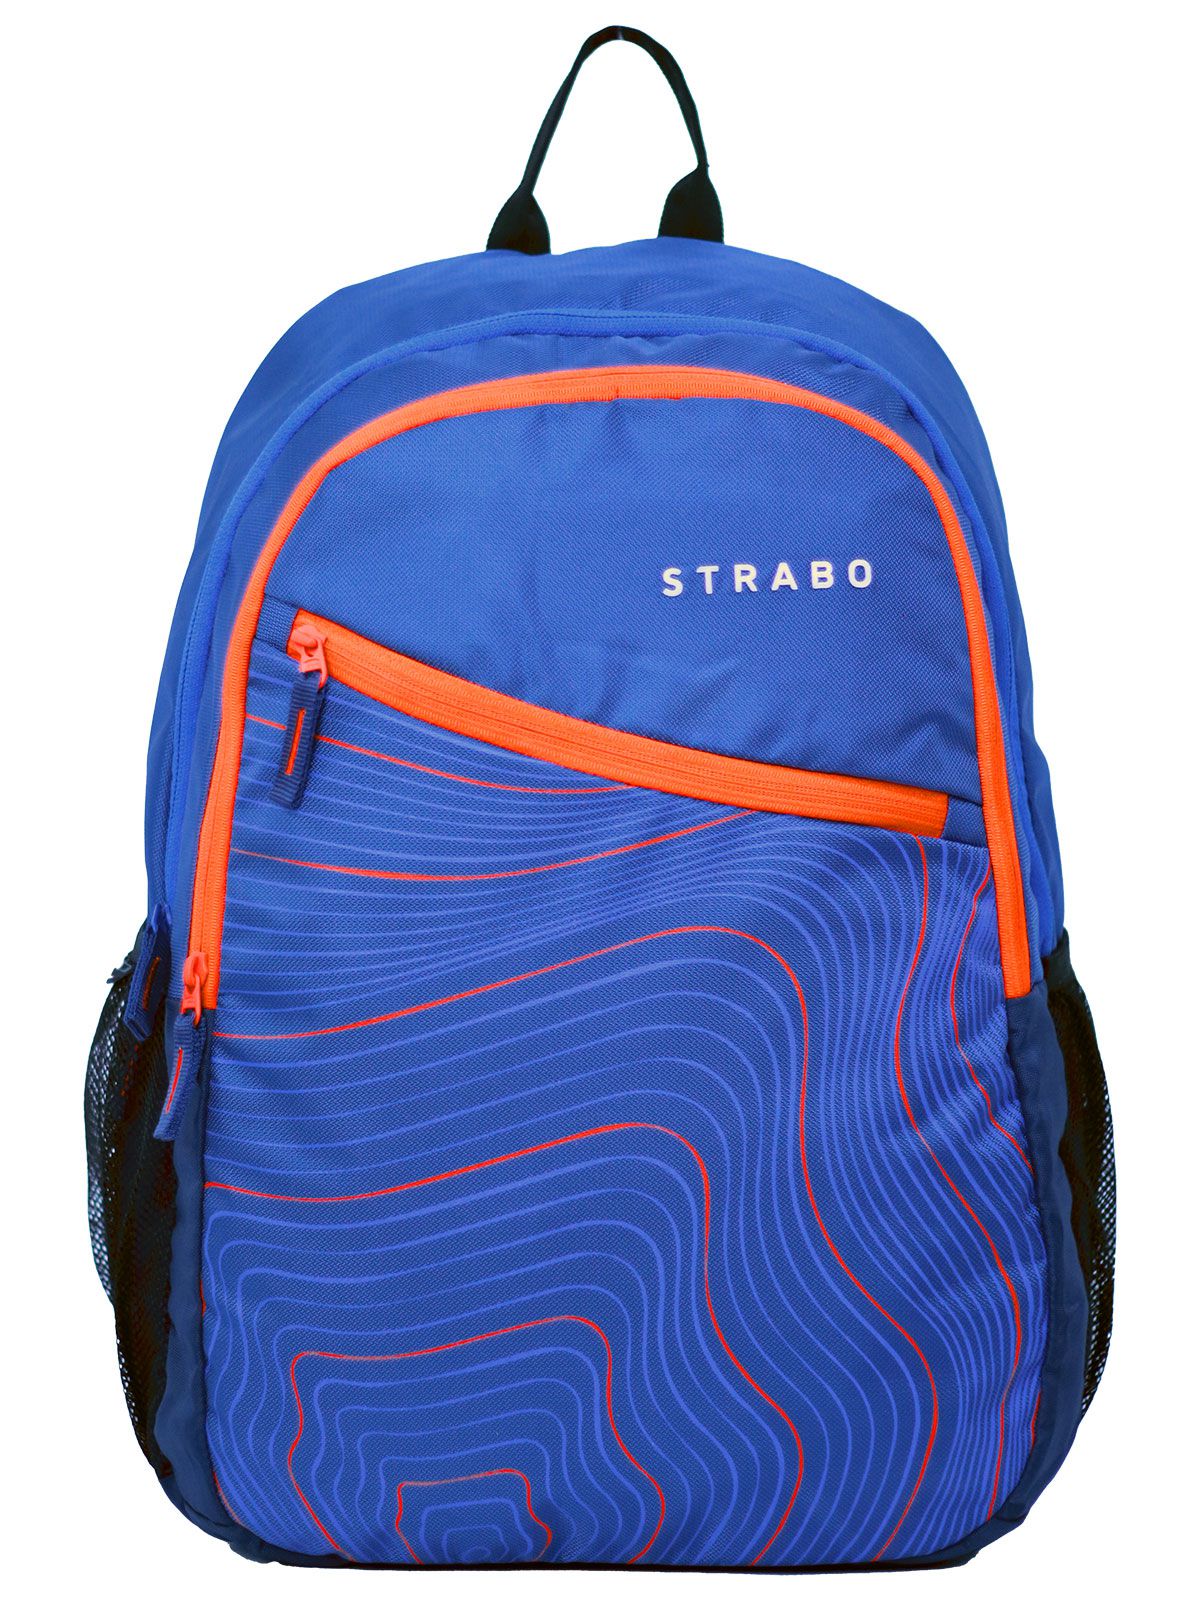     			STRABO - Blue Nylon Backpack ( 28 Ltrs )